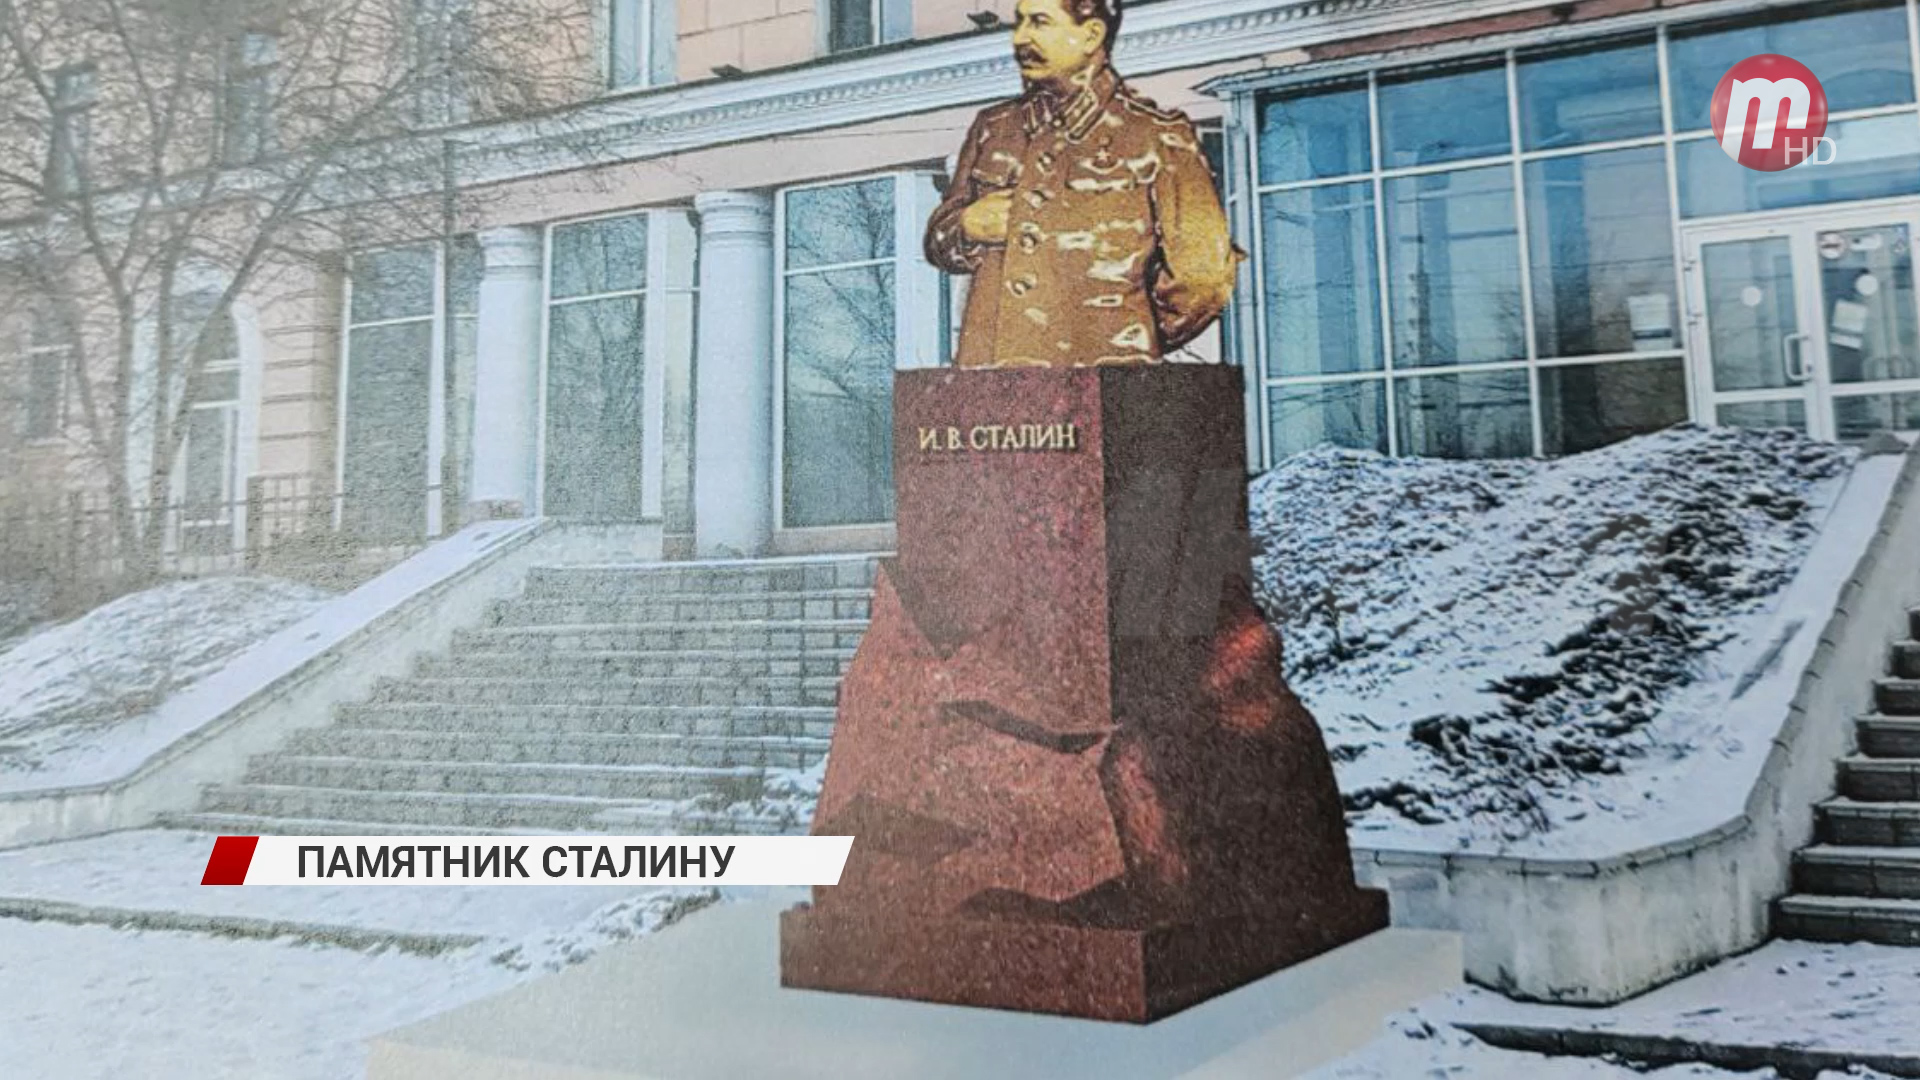 Общественники обратились к мэру Улан-Удэ с просьбой установить памятник Сталину